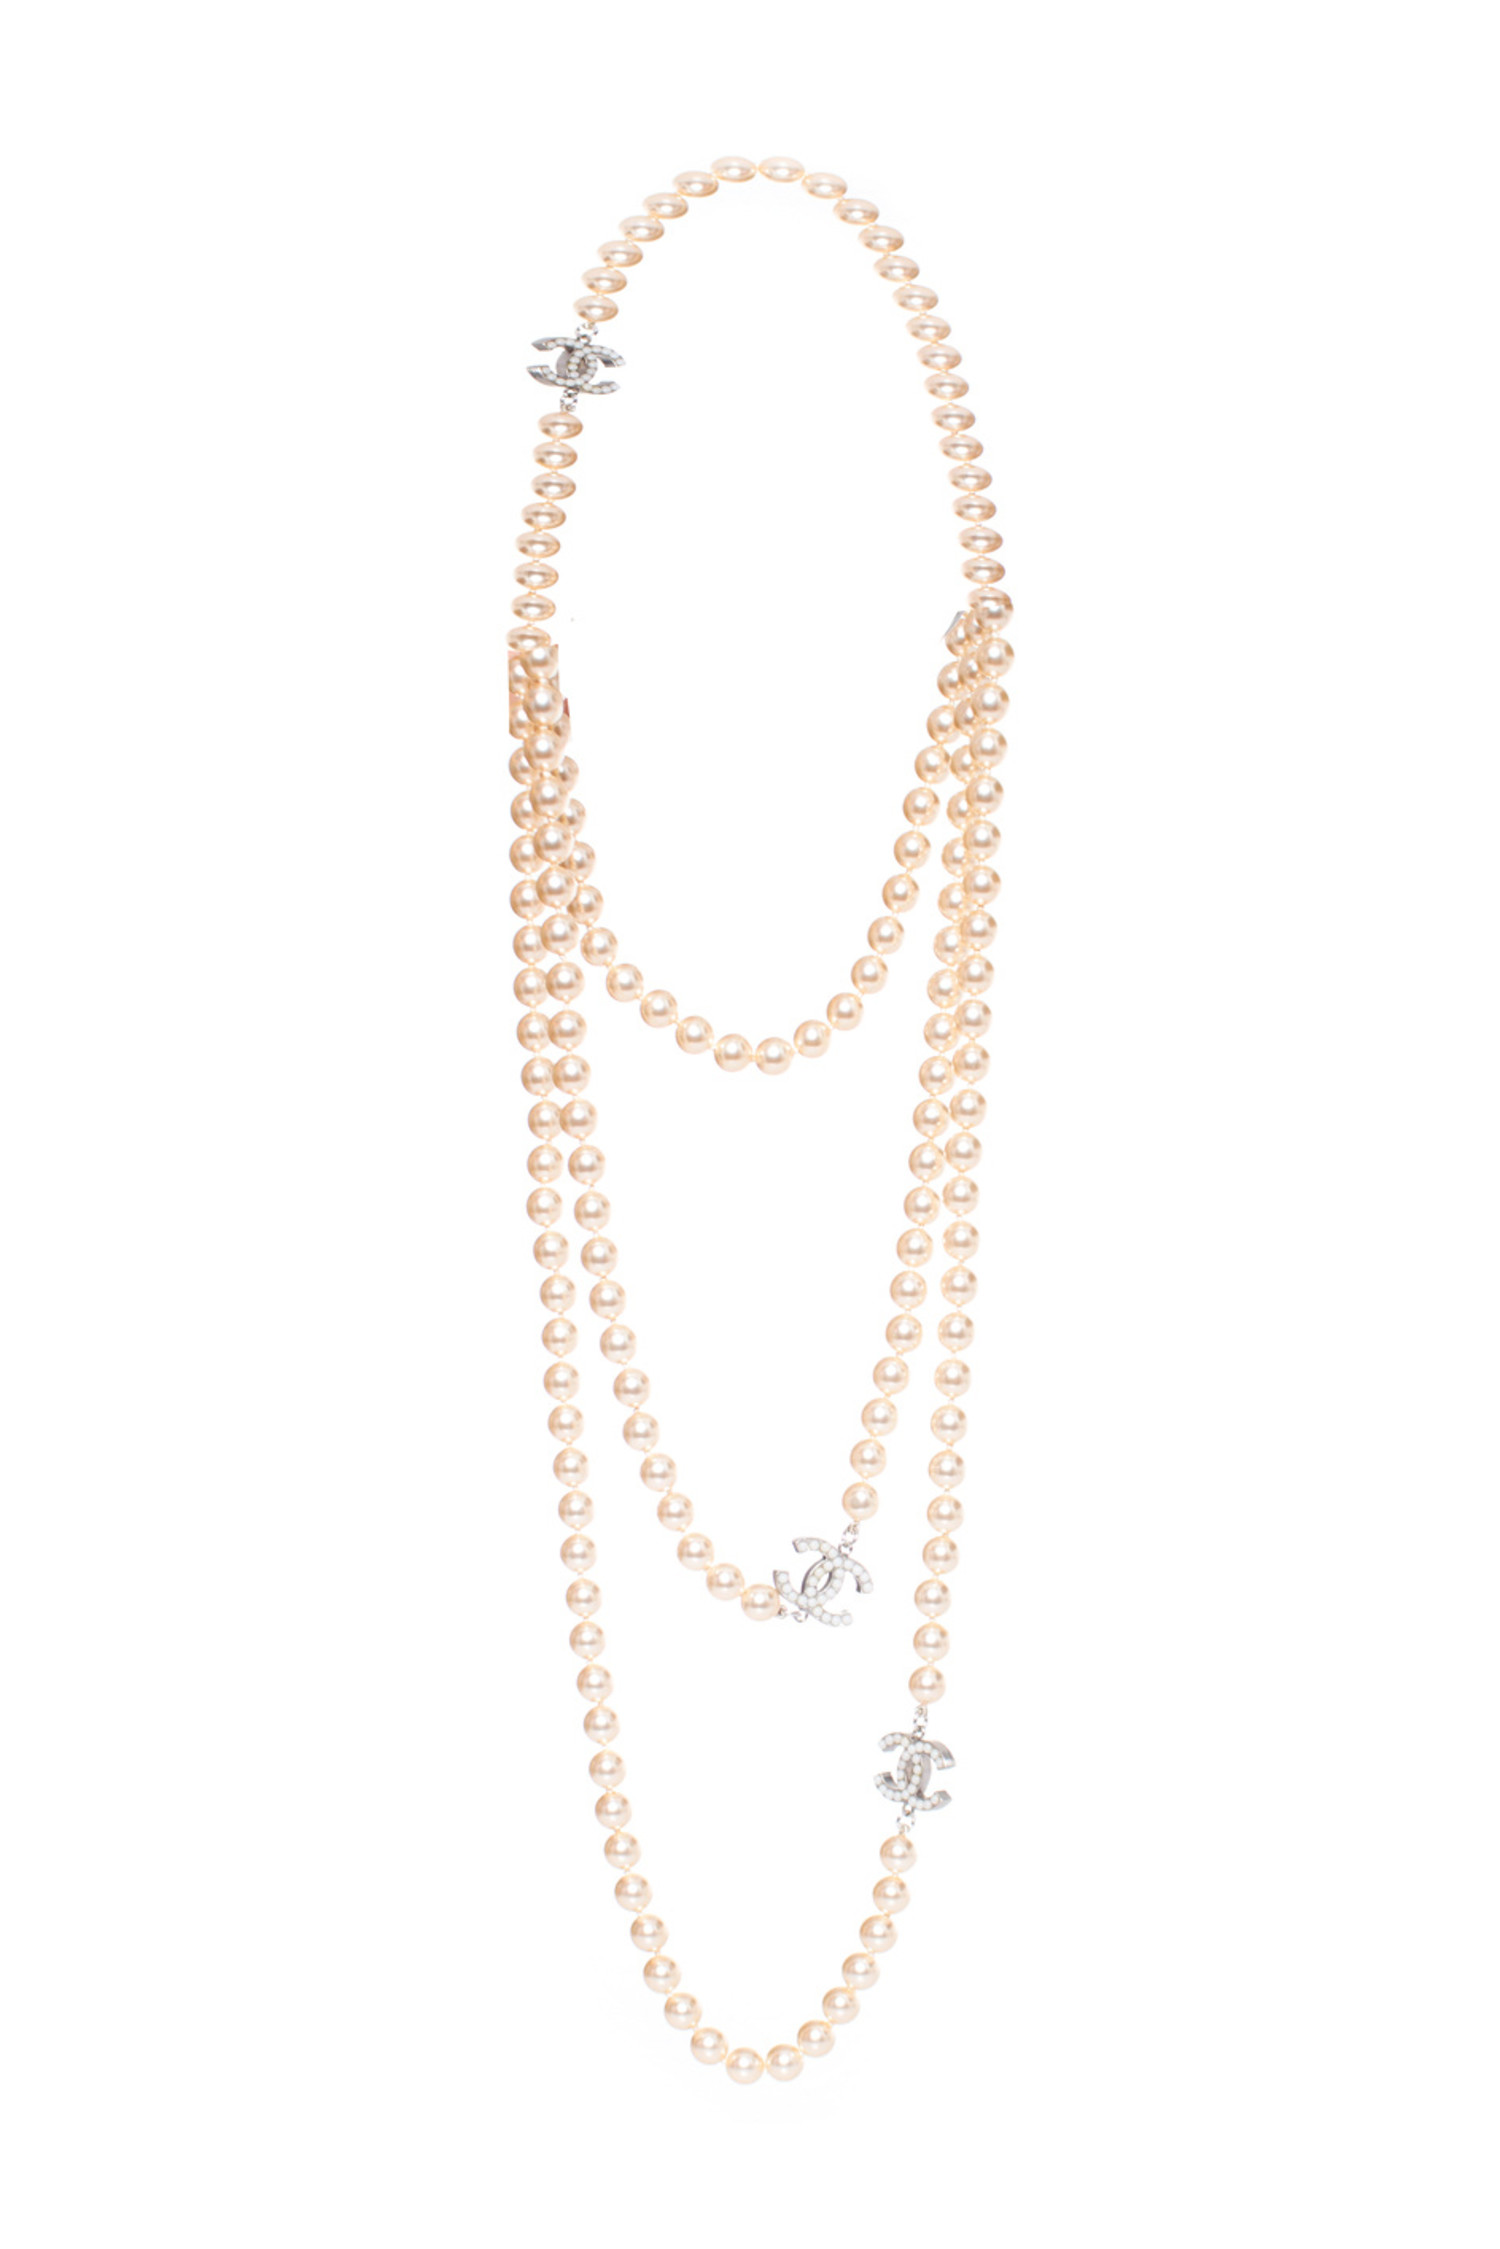 Chanel, 93P Pearl necklace - Unique Designer Pieces